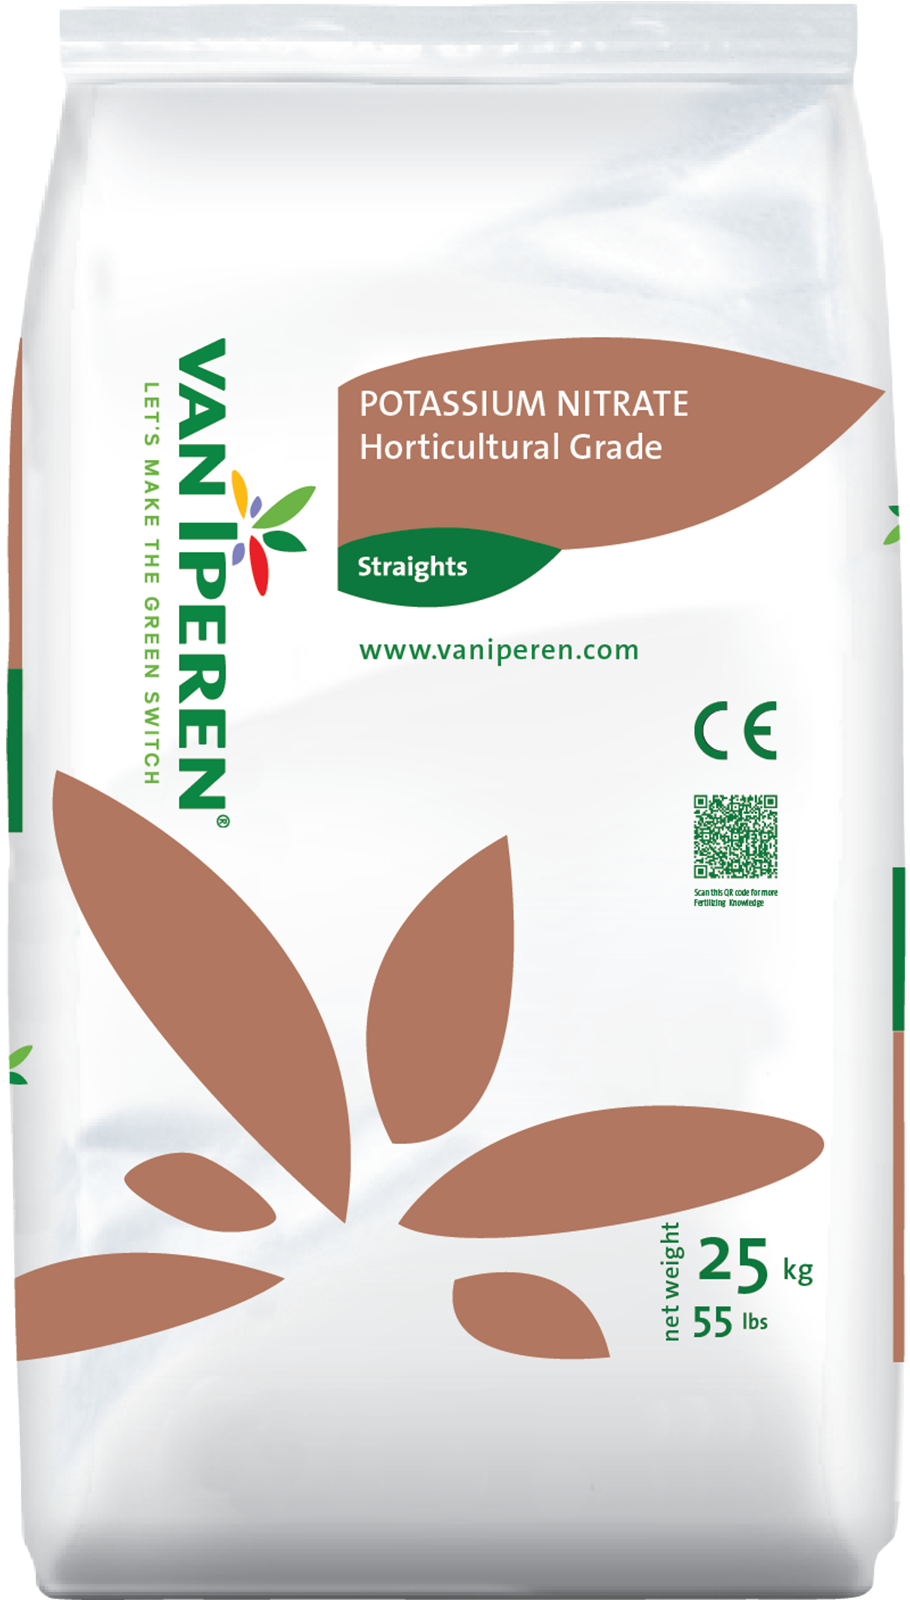 Le nitrate de potassium : caractéristiques et avantages - SQM Specialty  Plant Nutrition